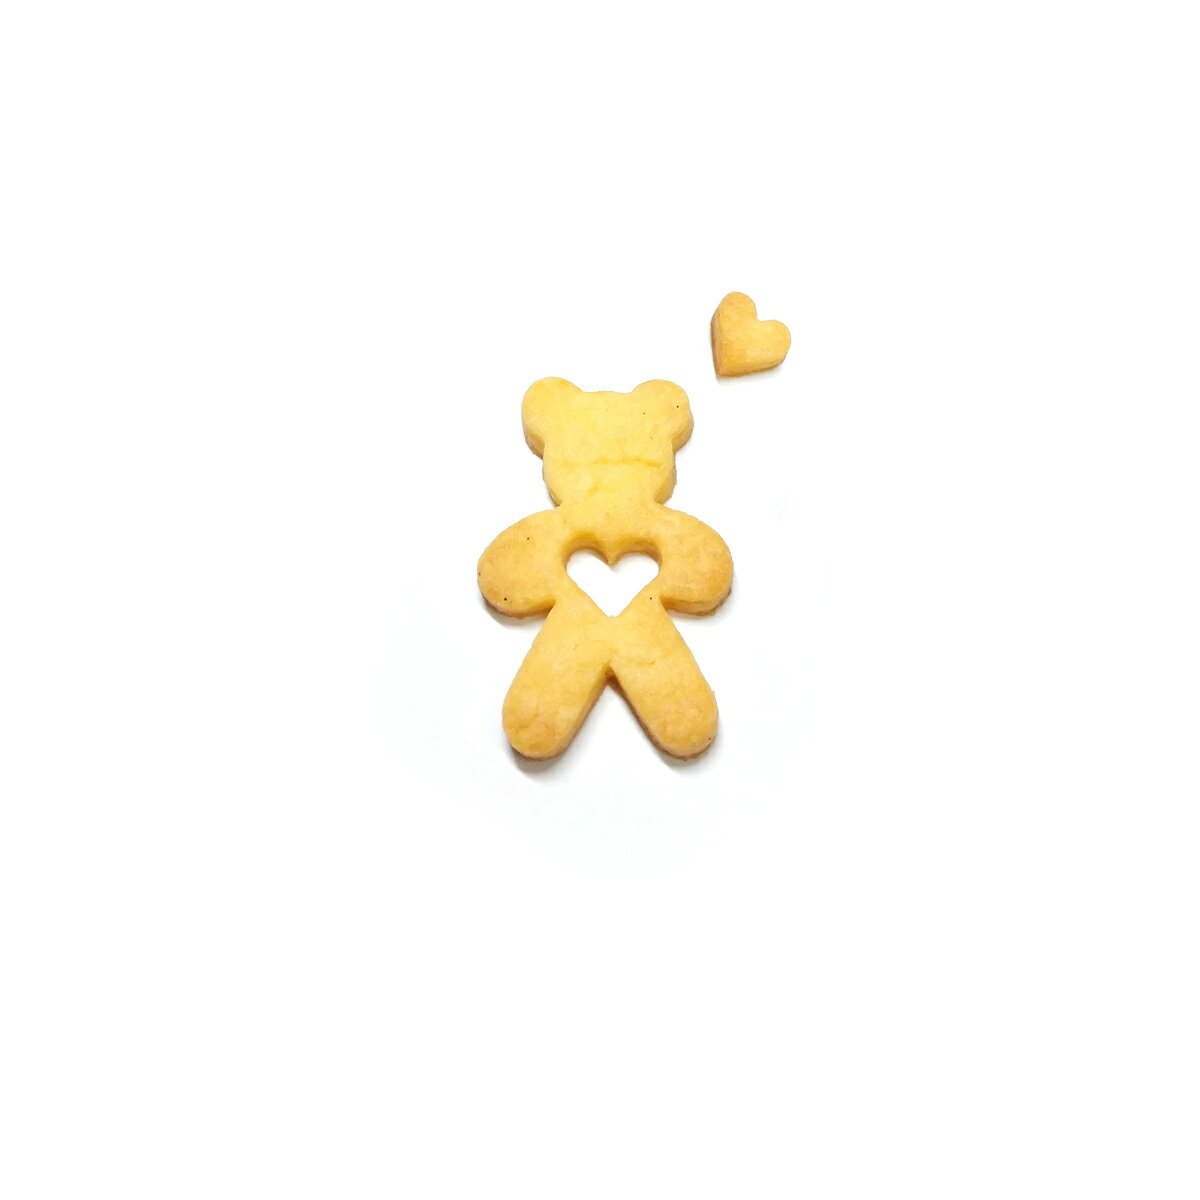 クッキー型 動物「ハート テディベア」 熊 クマ ハート ステンレス ヨーロッパで 人気 の おしゃれ で 珍しい 形を取り寄せました!お菓子作りに! 手作りクッキー プレゼント ギフト に！ SiTRA シトラ 2